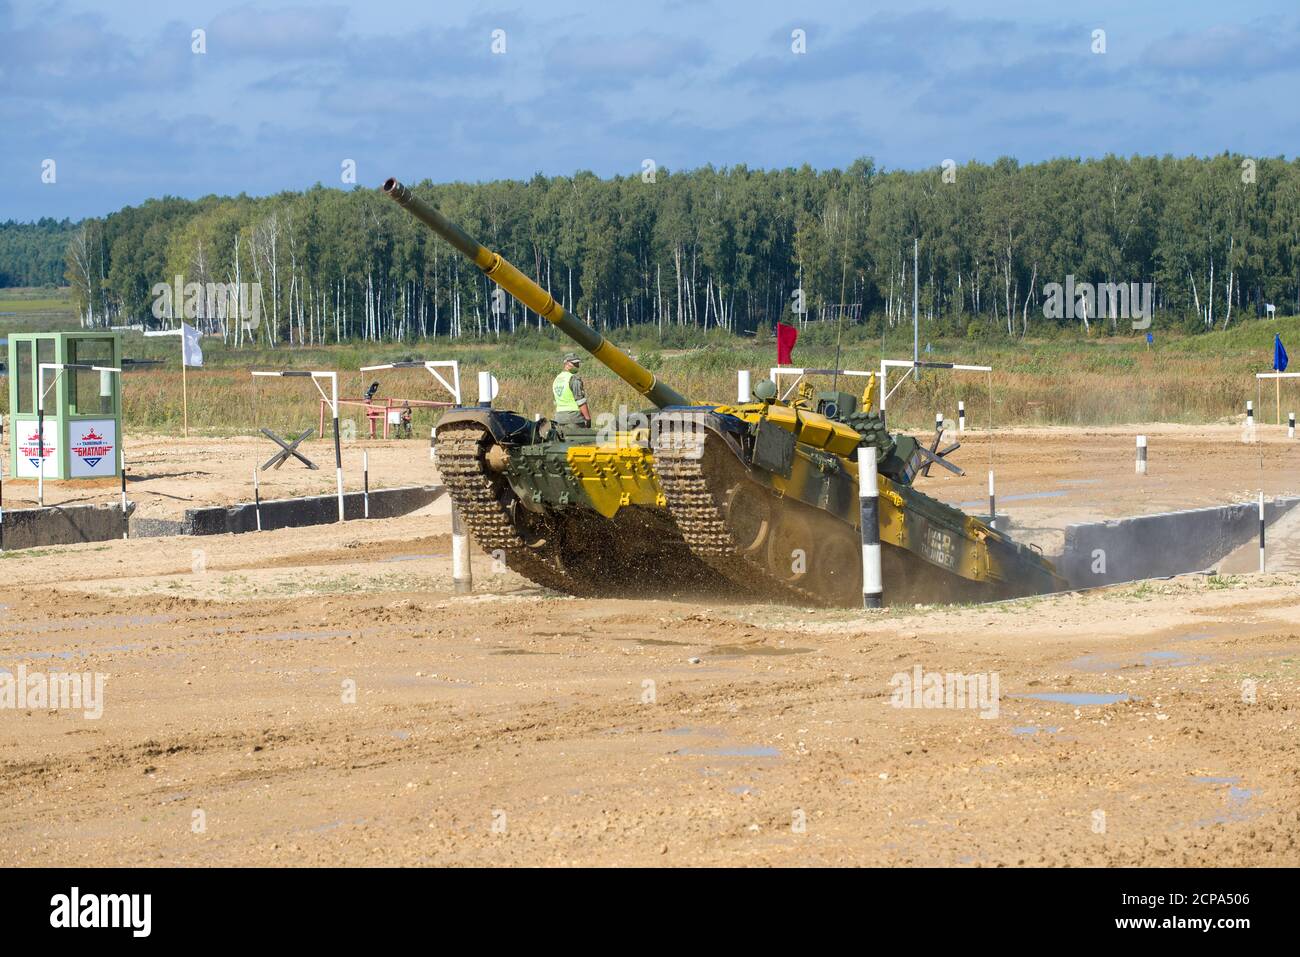 ALABINO, RUSIA - 25 DE AGOSTO de 2020: El tanque T-72B3 del equipo de Kazajstán supera el obstáculo 'Moat'. Fragmento de la competencia militar internacional Foto de stock